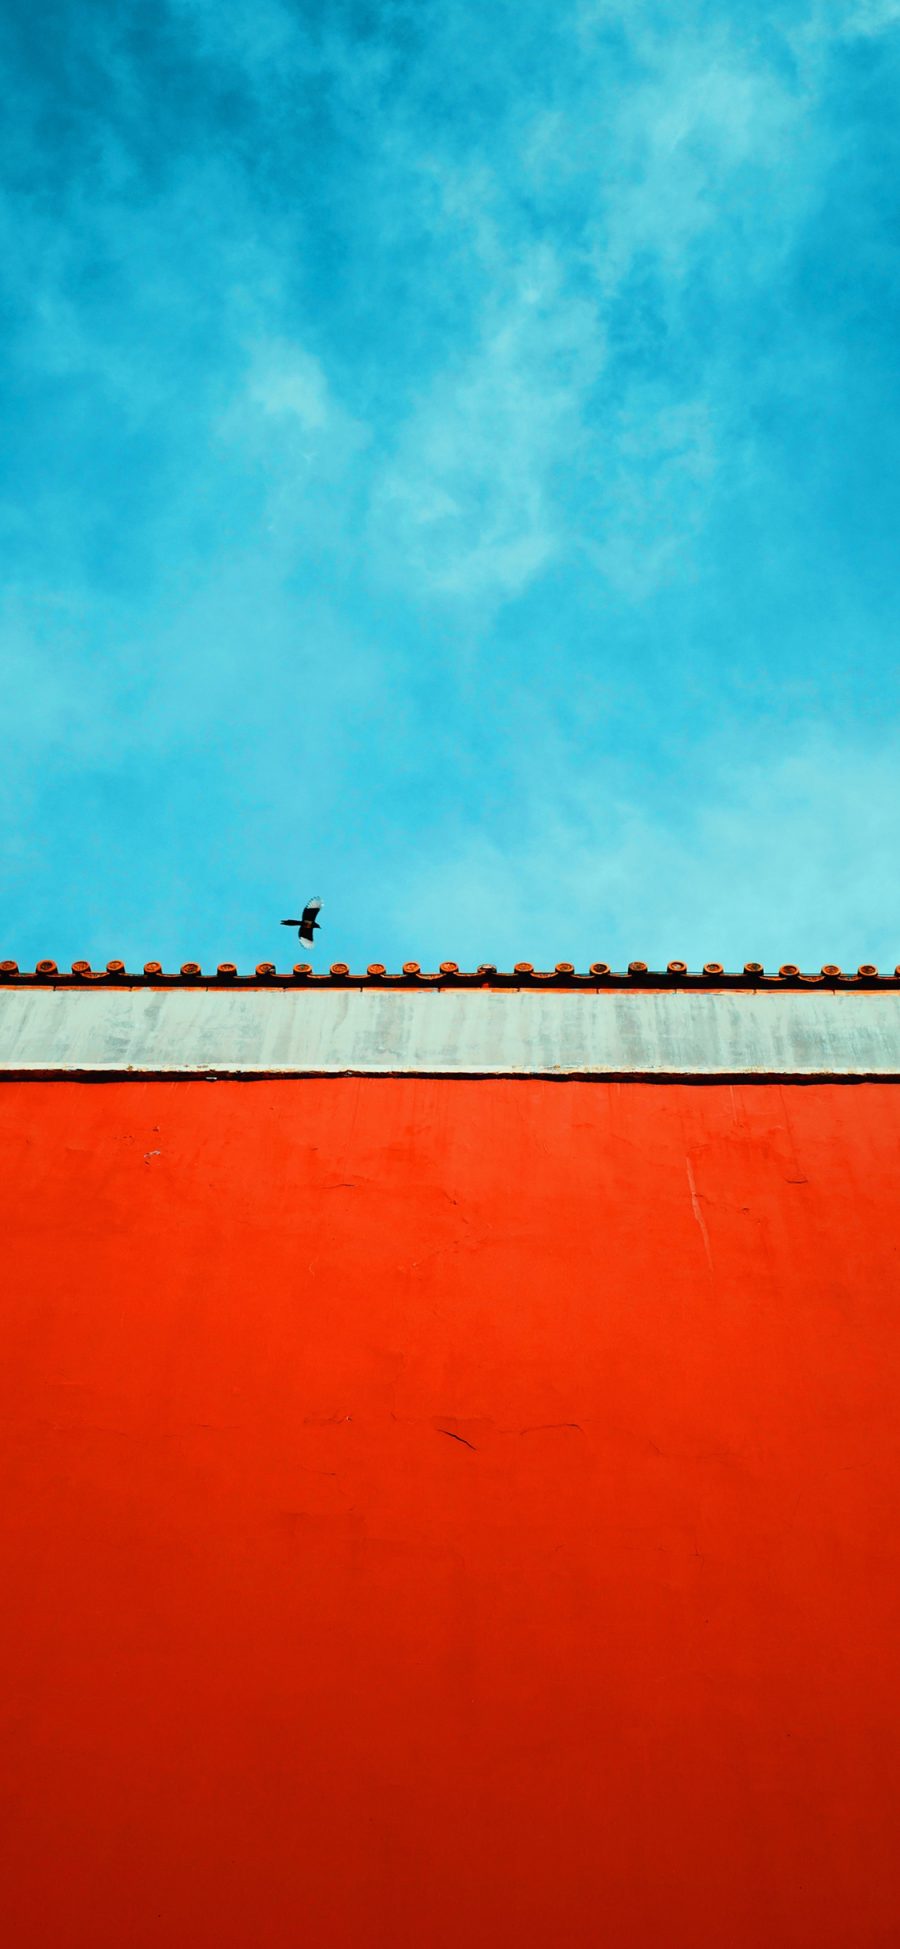 [2436×1125]故宫 建筑 红墙 天空 鸟 苹果手机壁纸图片